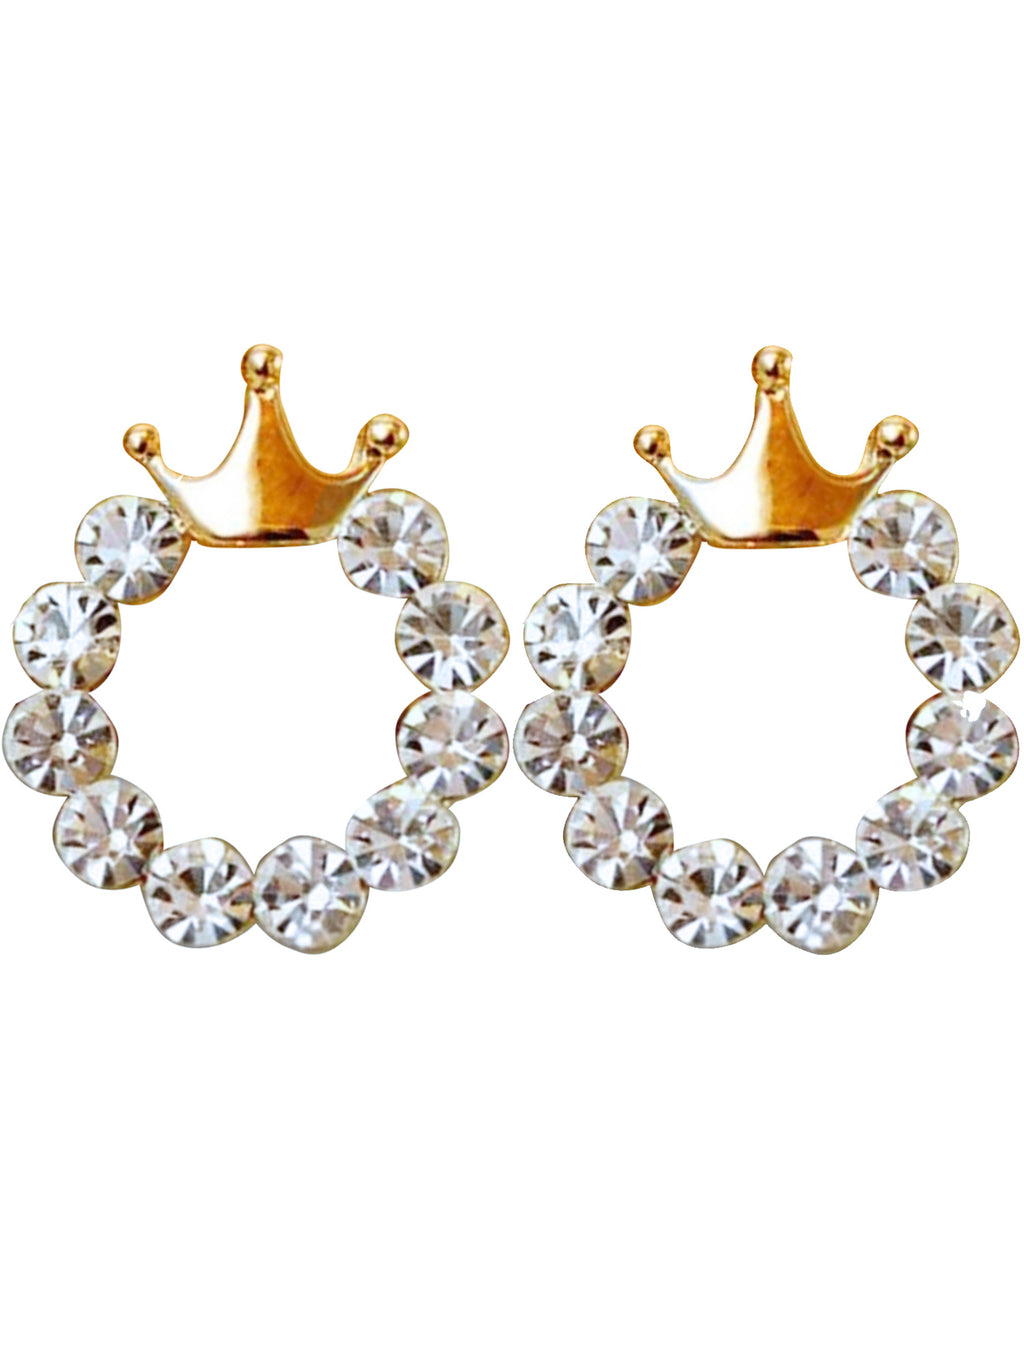 Petite Crowns On Rhinestone Circle Earrings